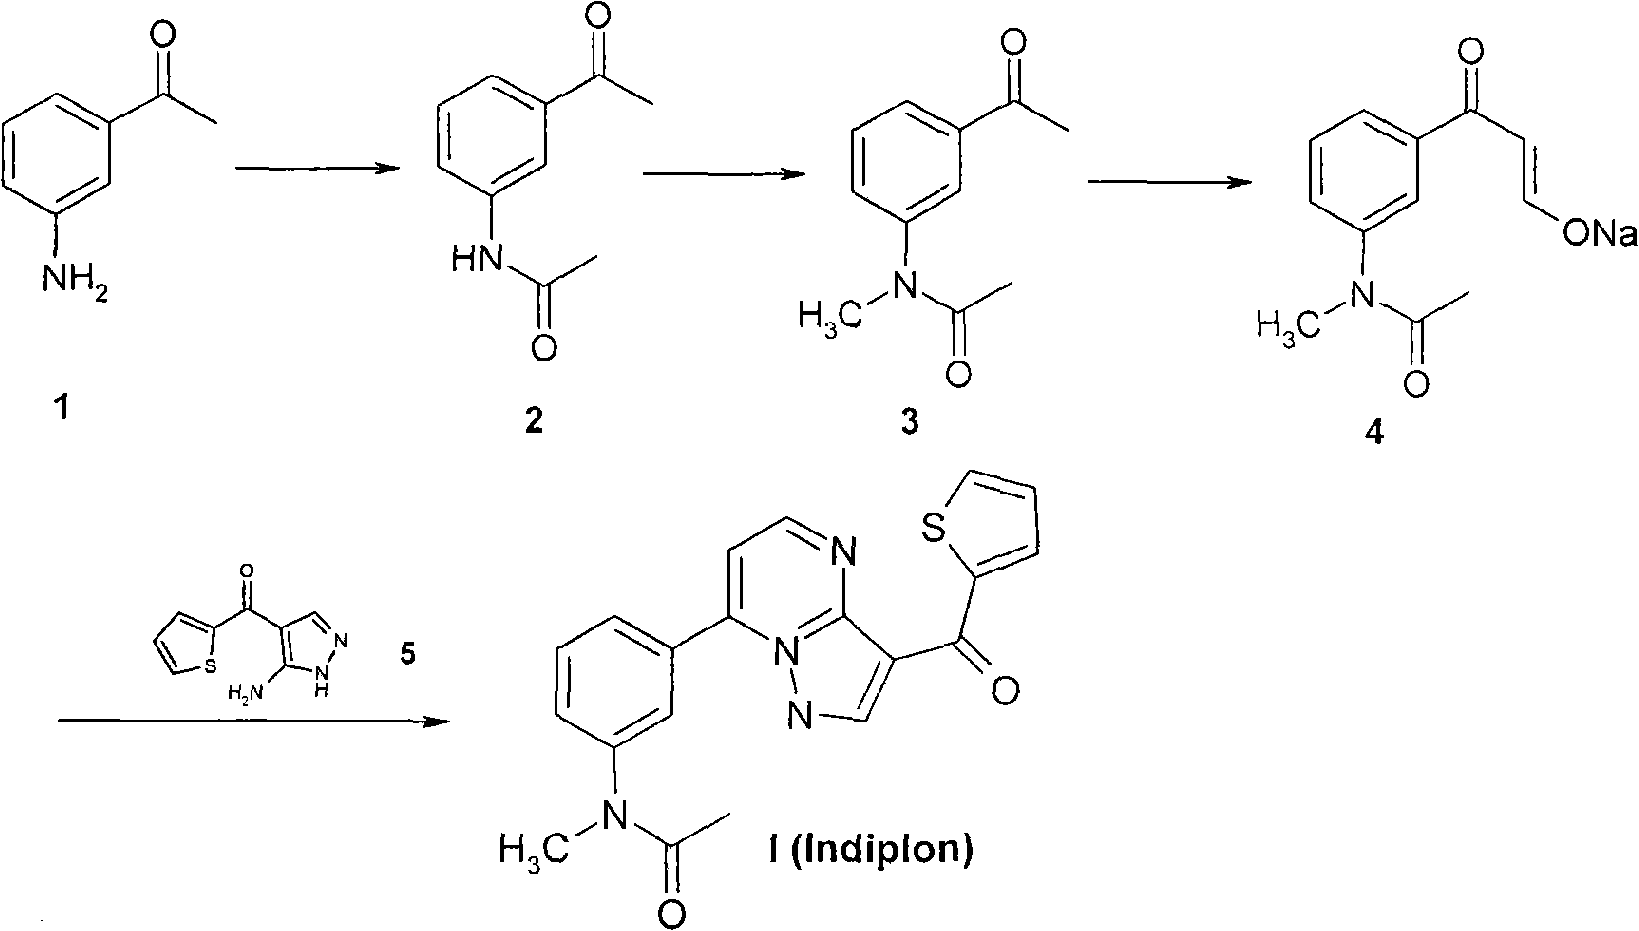 Method for synthesizing indiplon